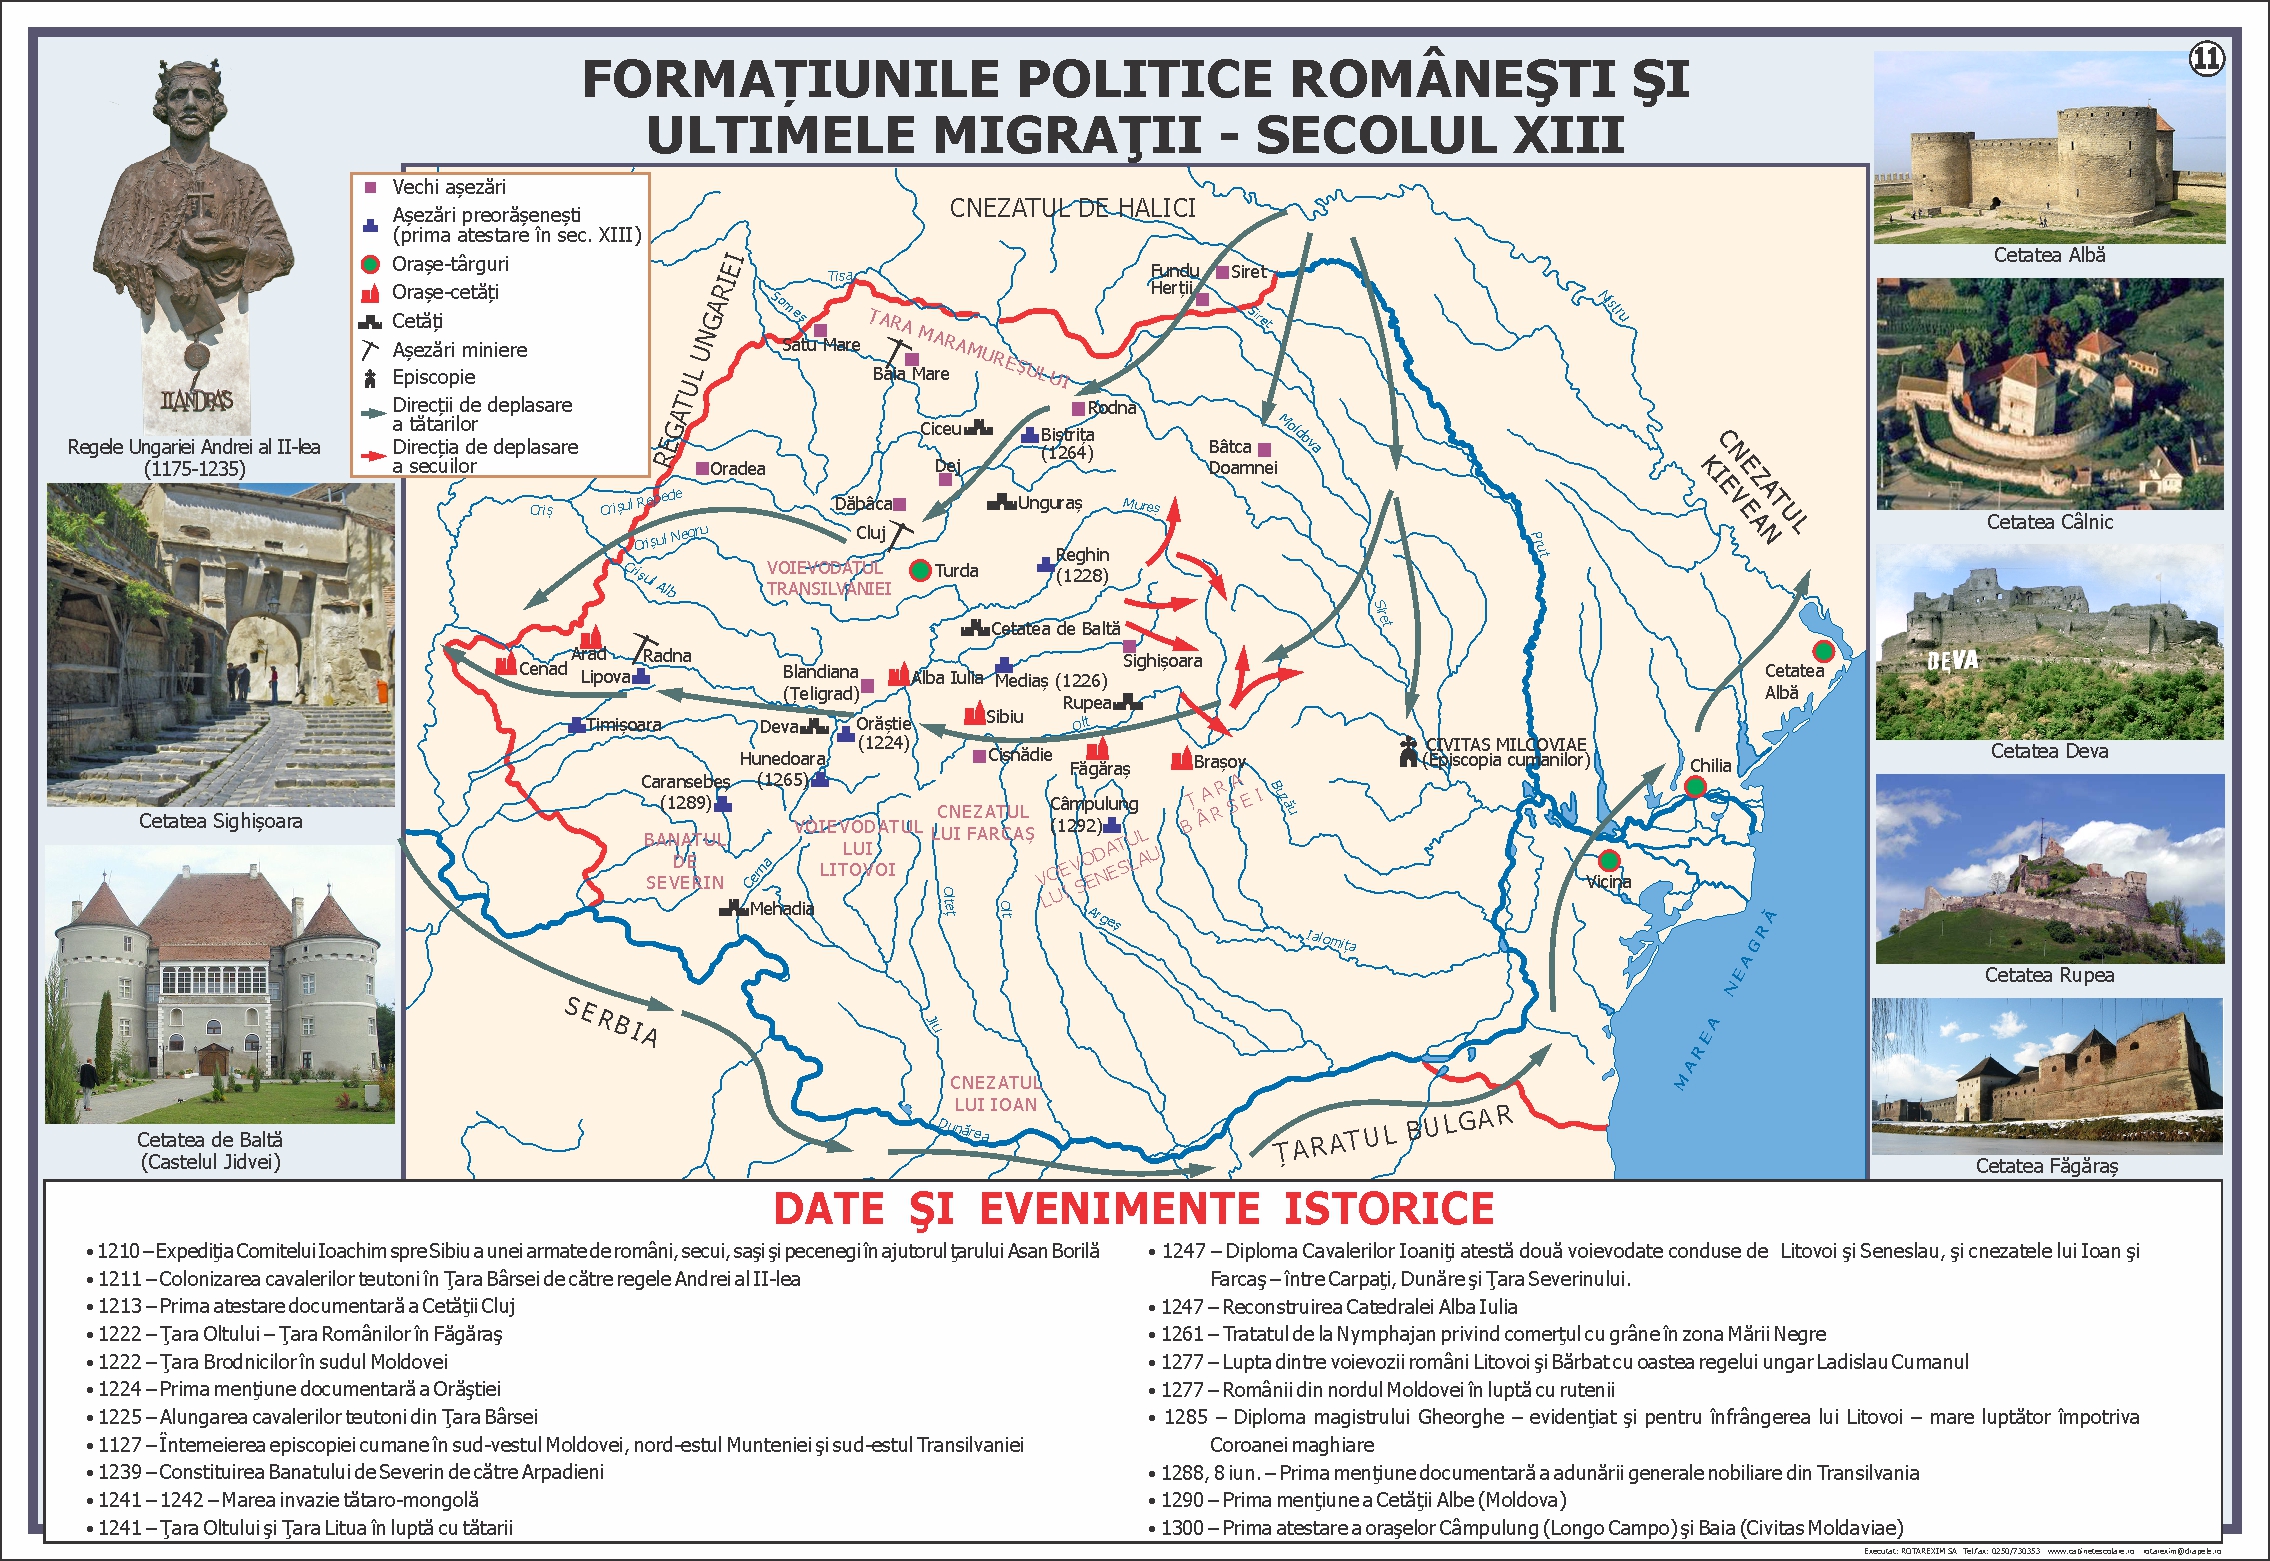 Formatiunile politice romanesti si ultimele migratii - sec XIII